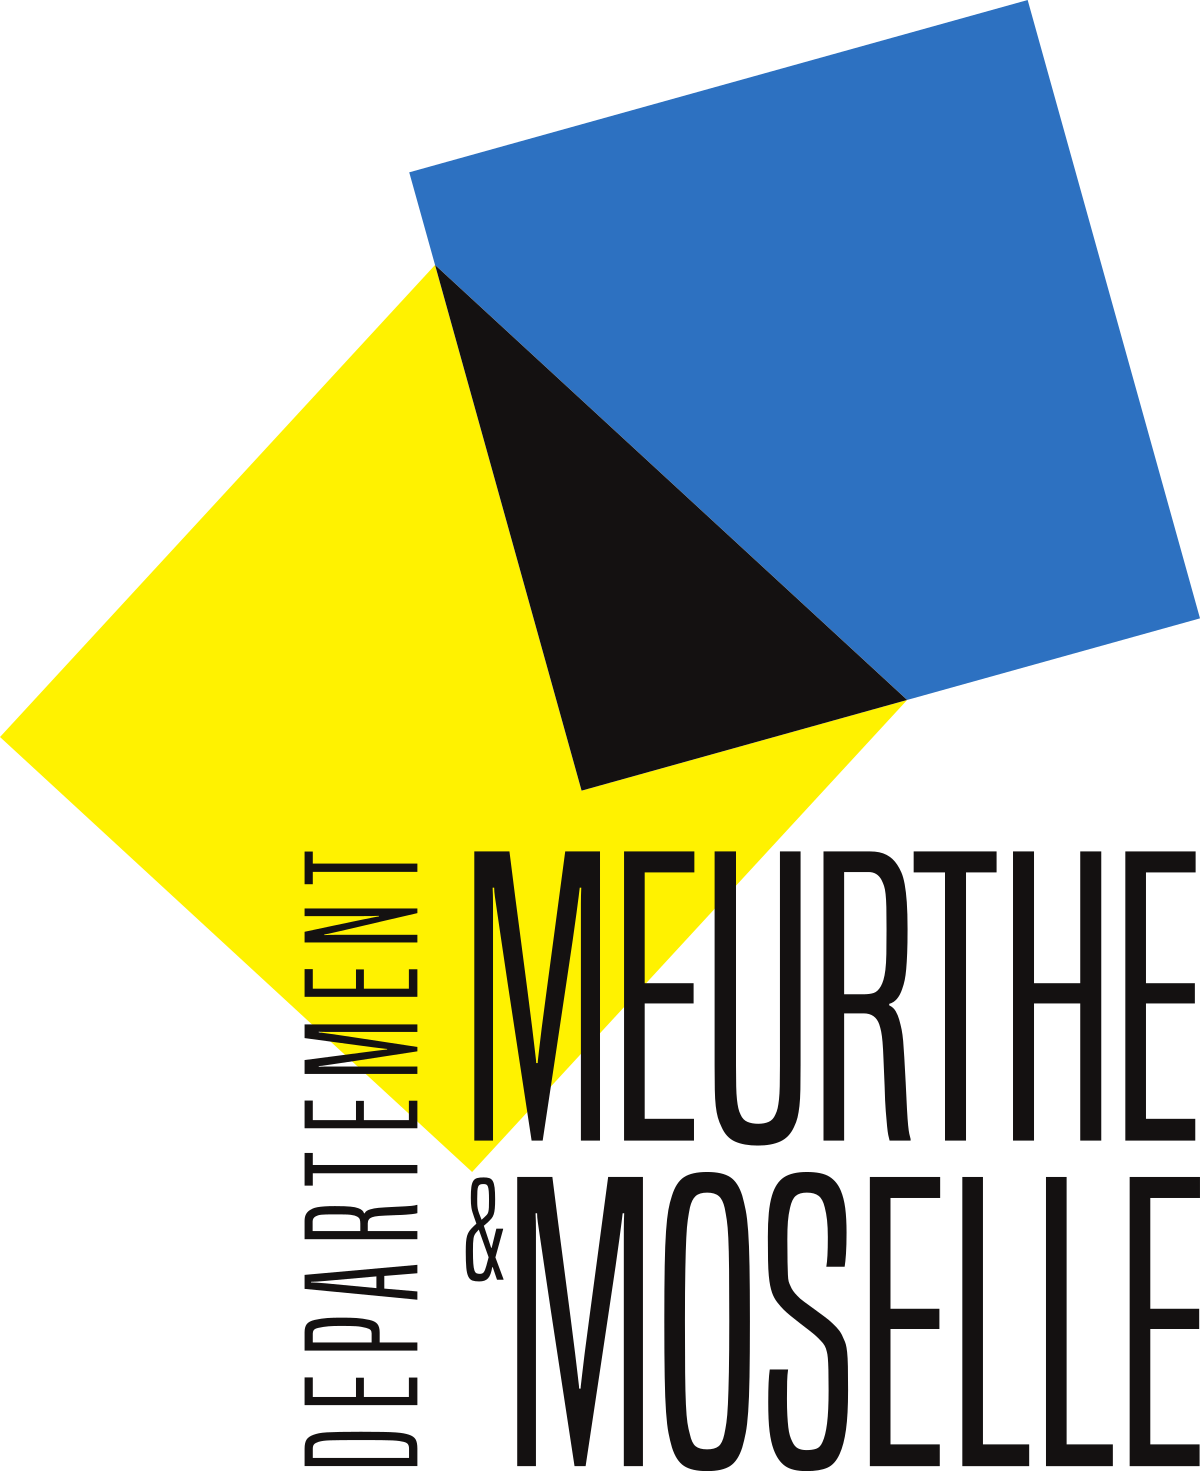 Meurthe et Moselle 54 logo 2018.svg